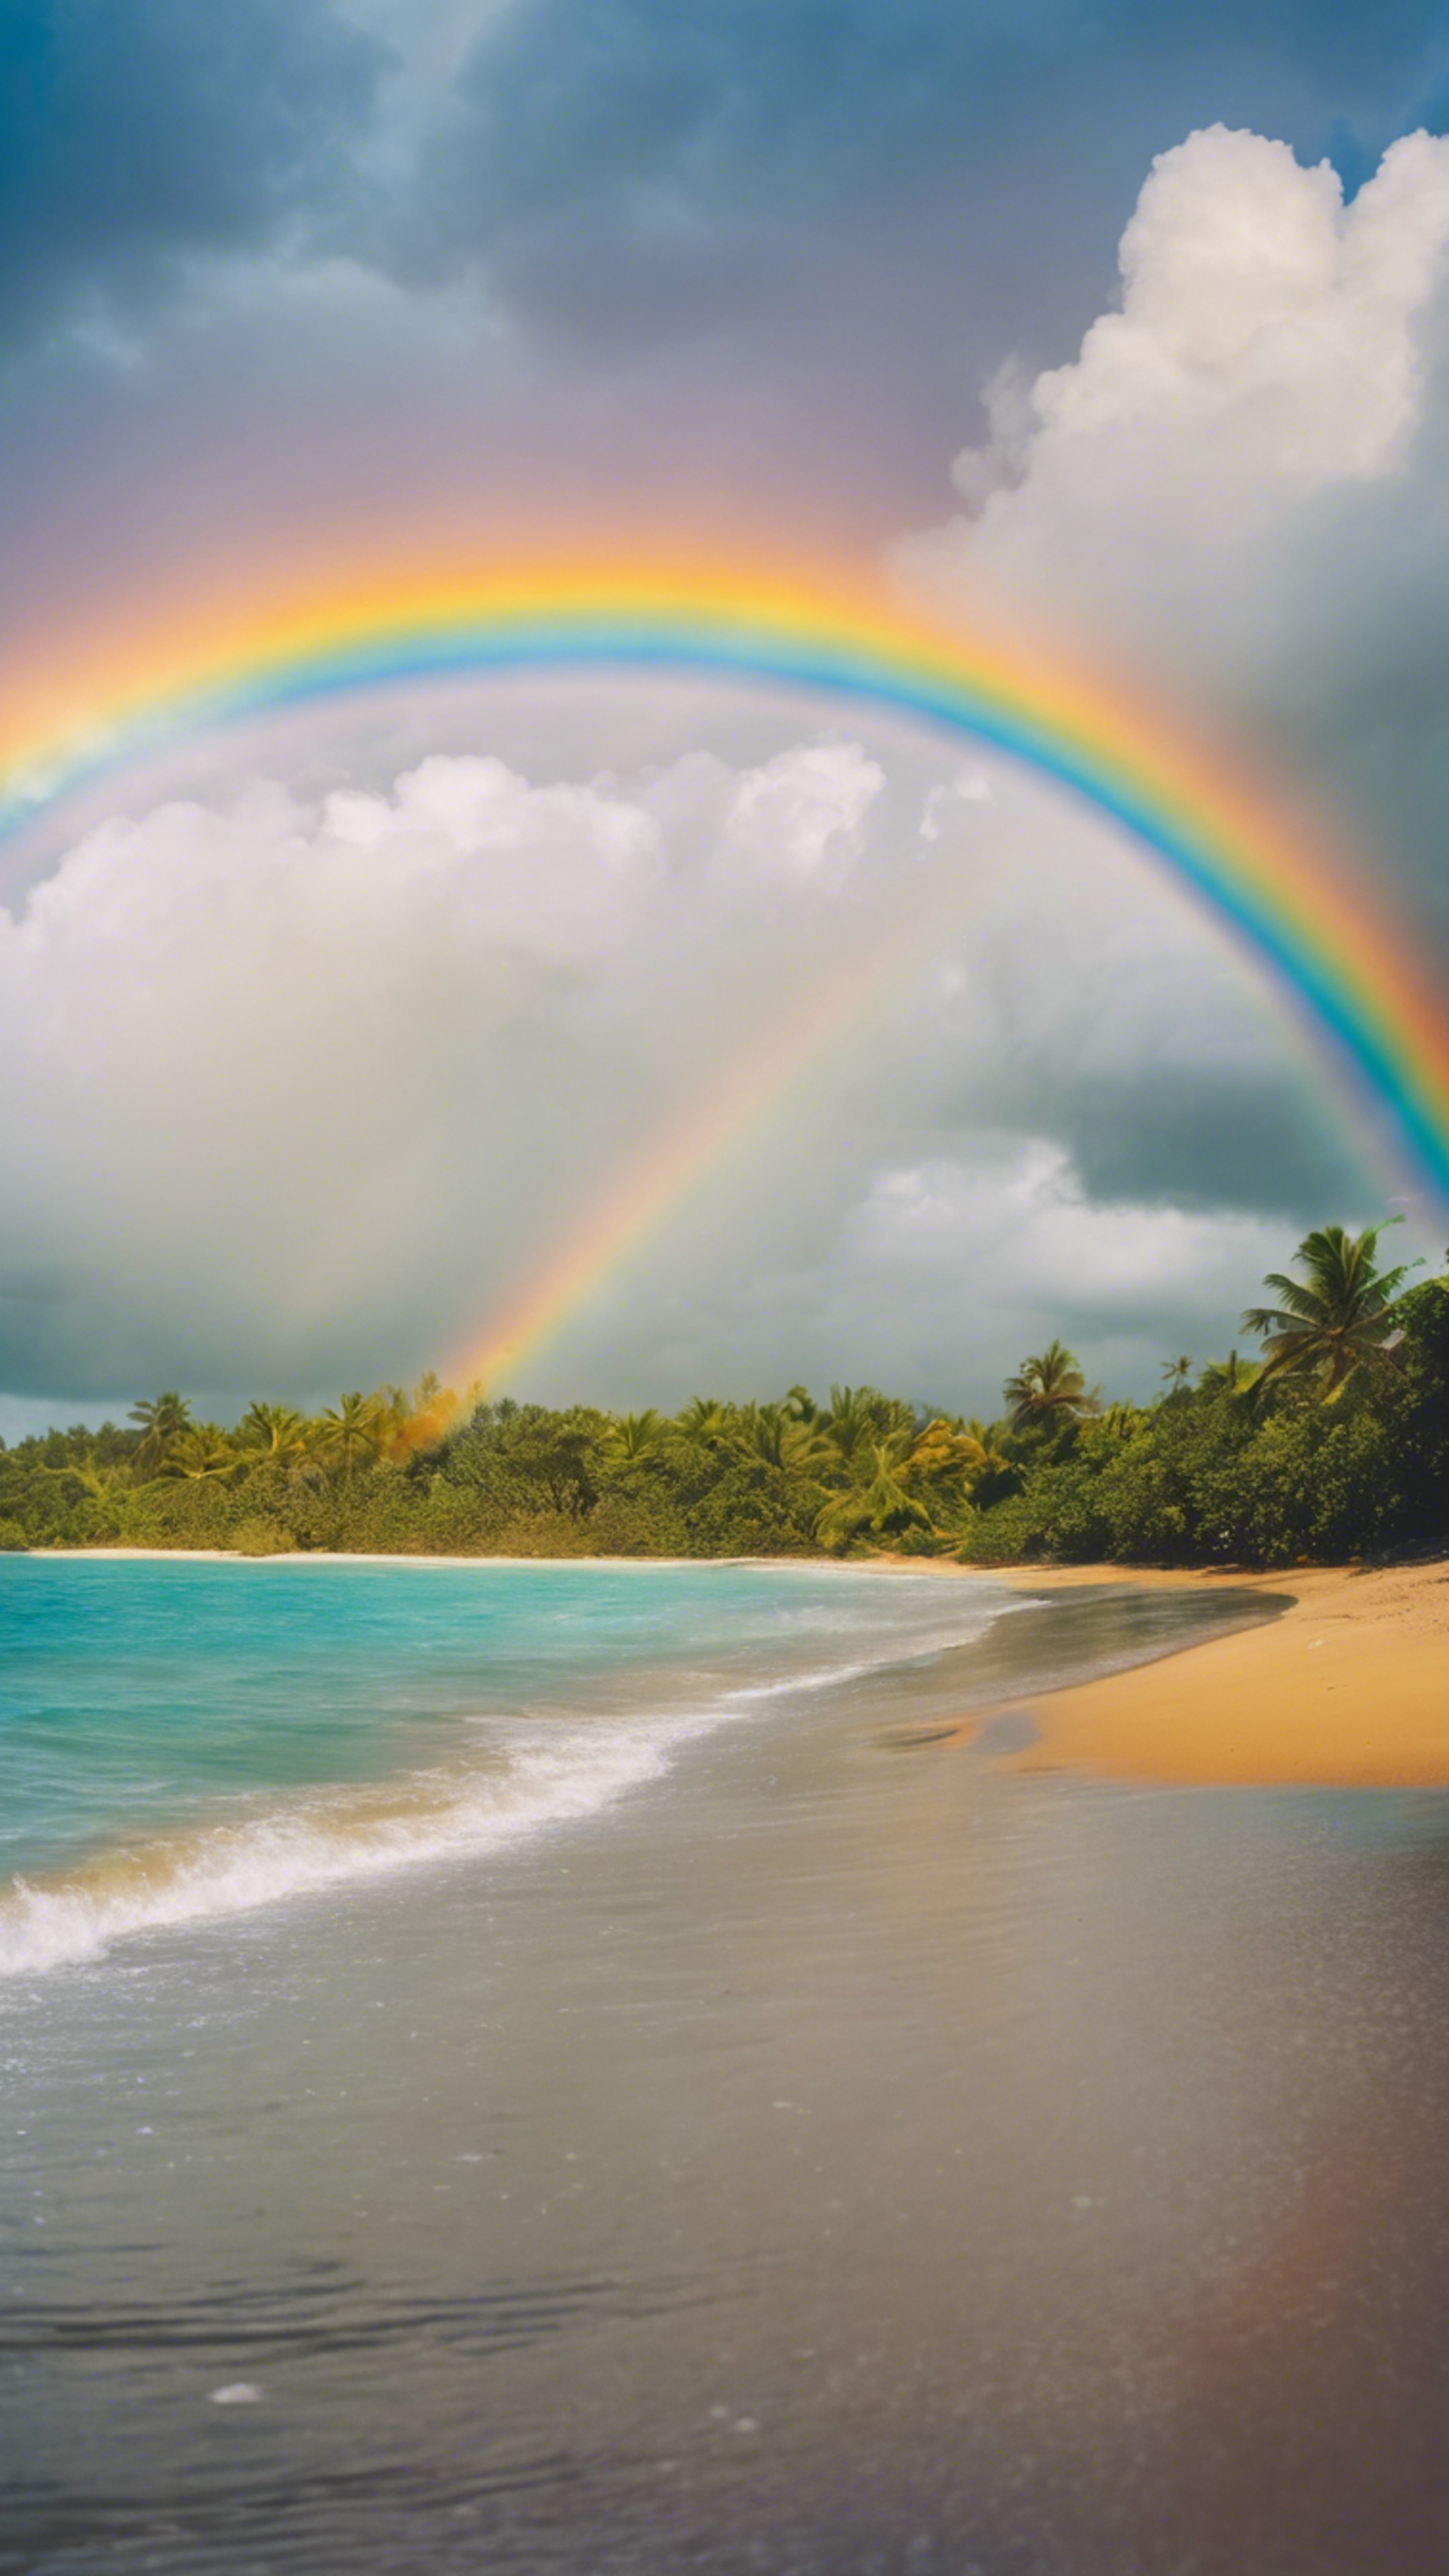 Vivid rainbow arcing across the sky after a rainfall at a tropical beach. ورق الجدران[d3854ca165cf432a9c18]